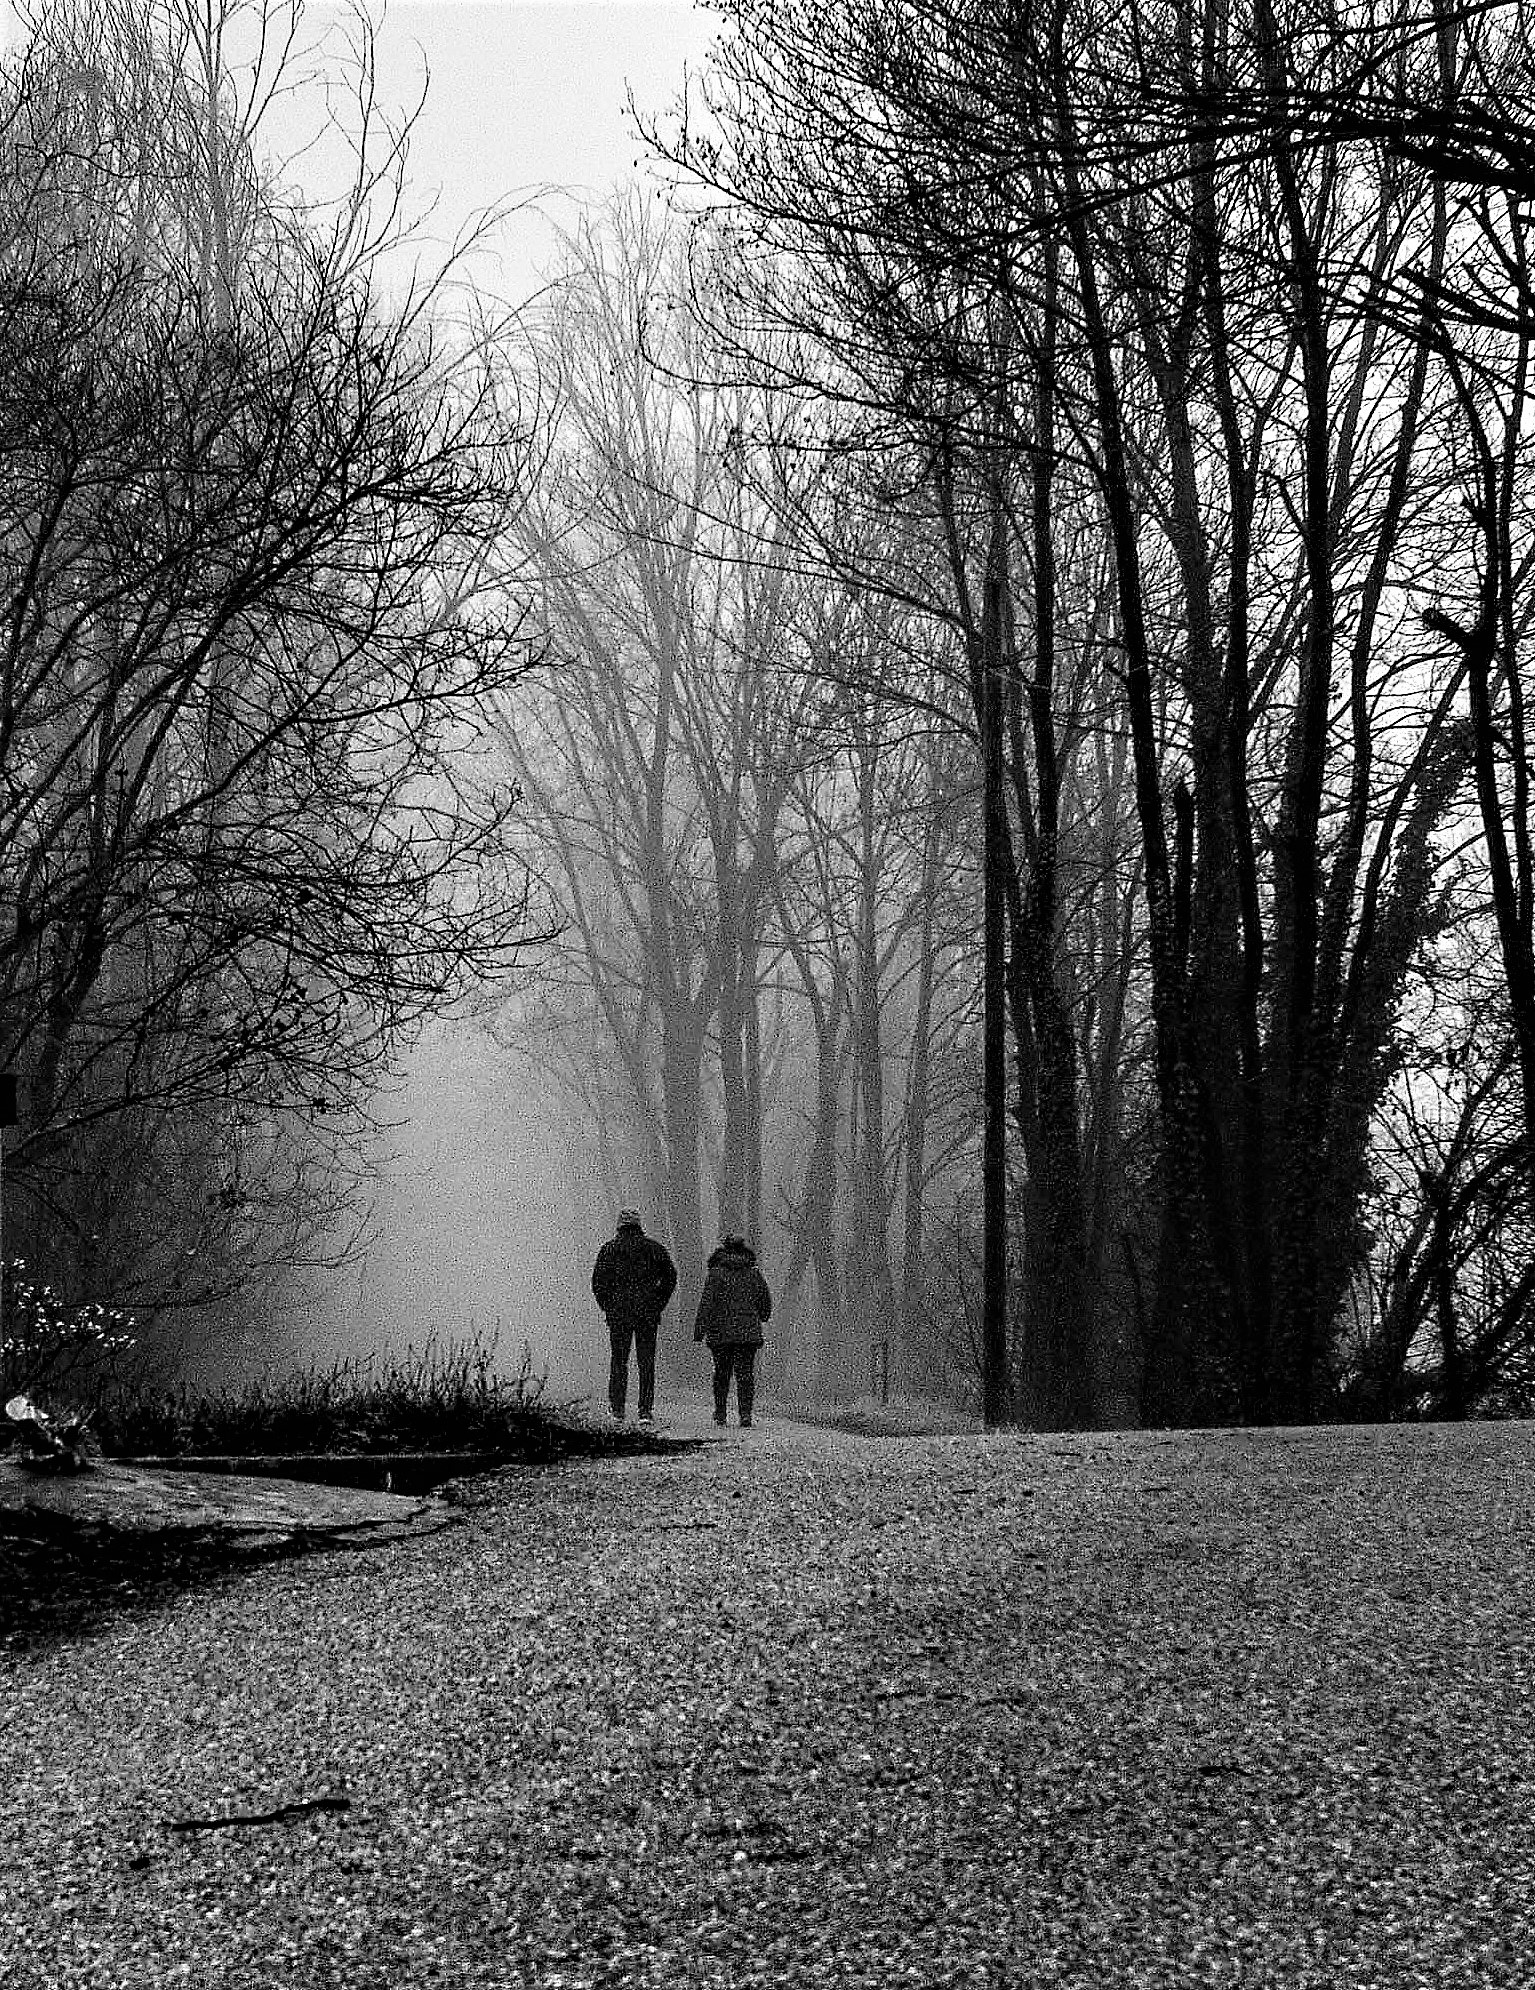 Walking in the fog...